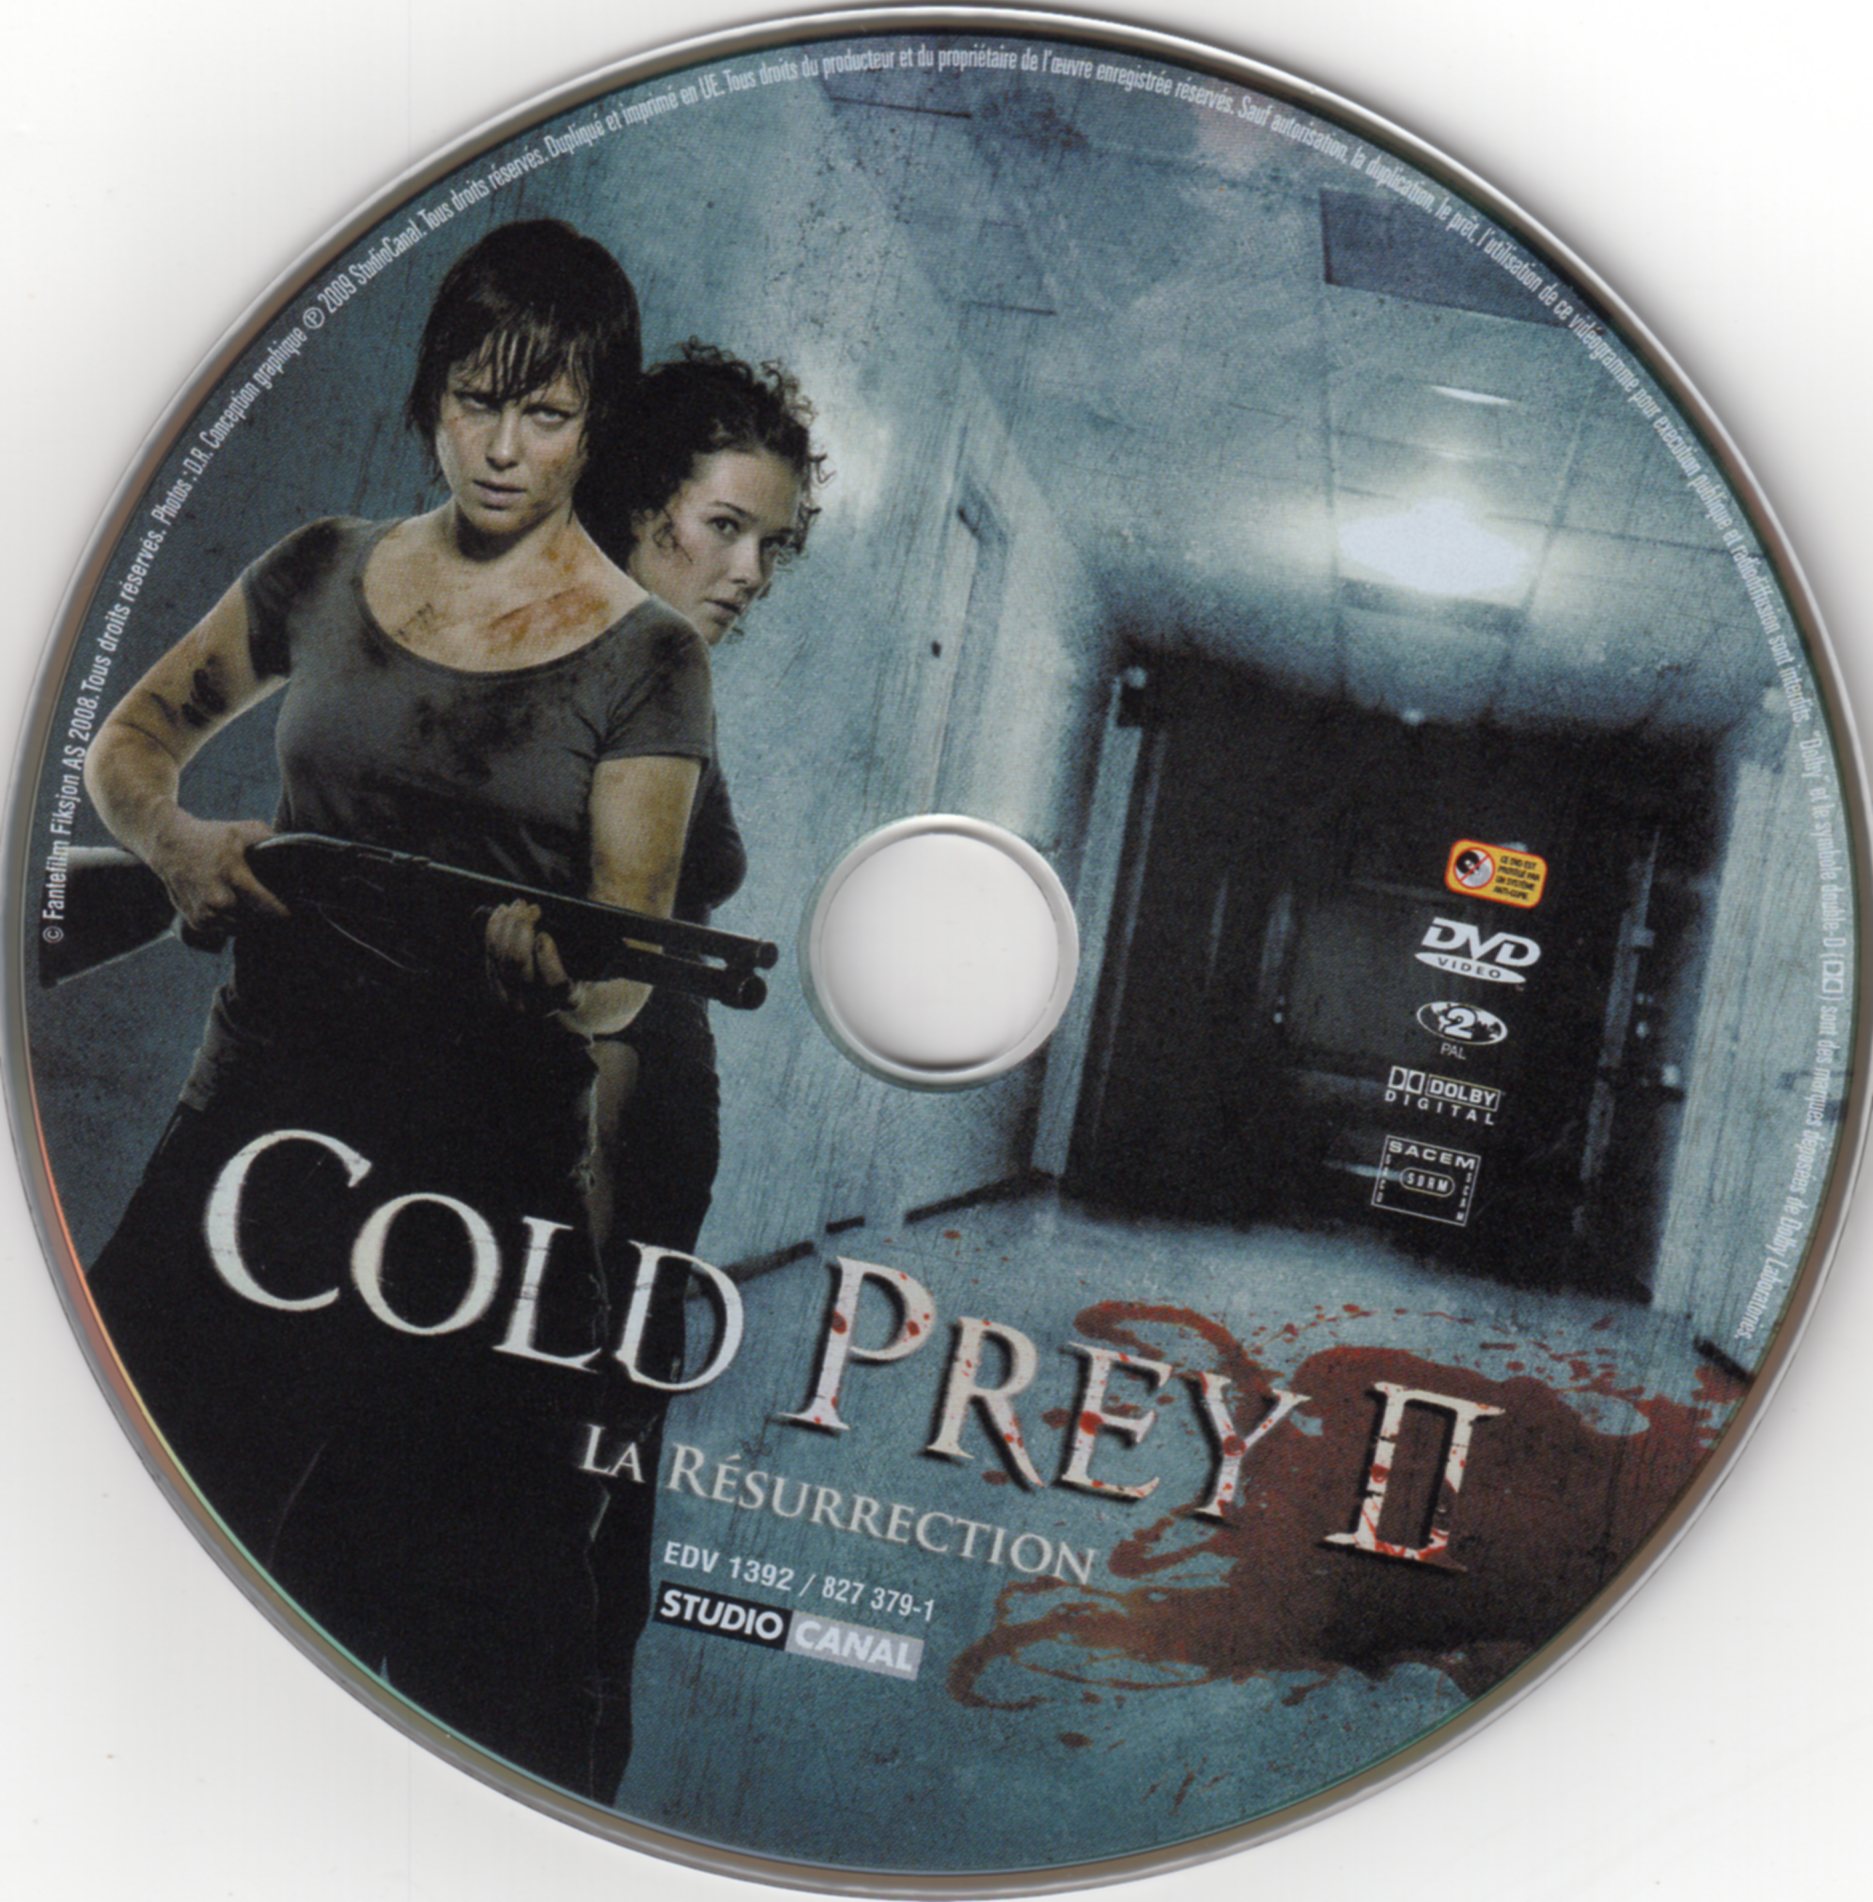 Cold prey 2